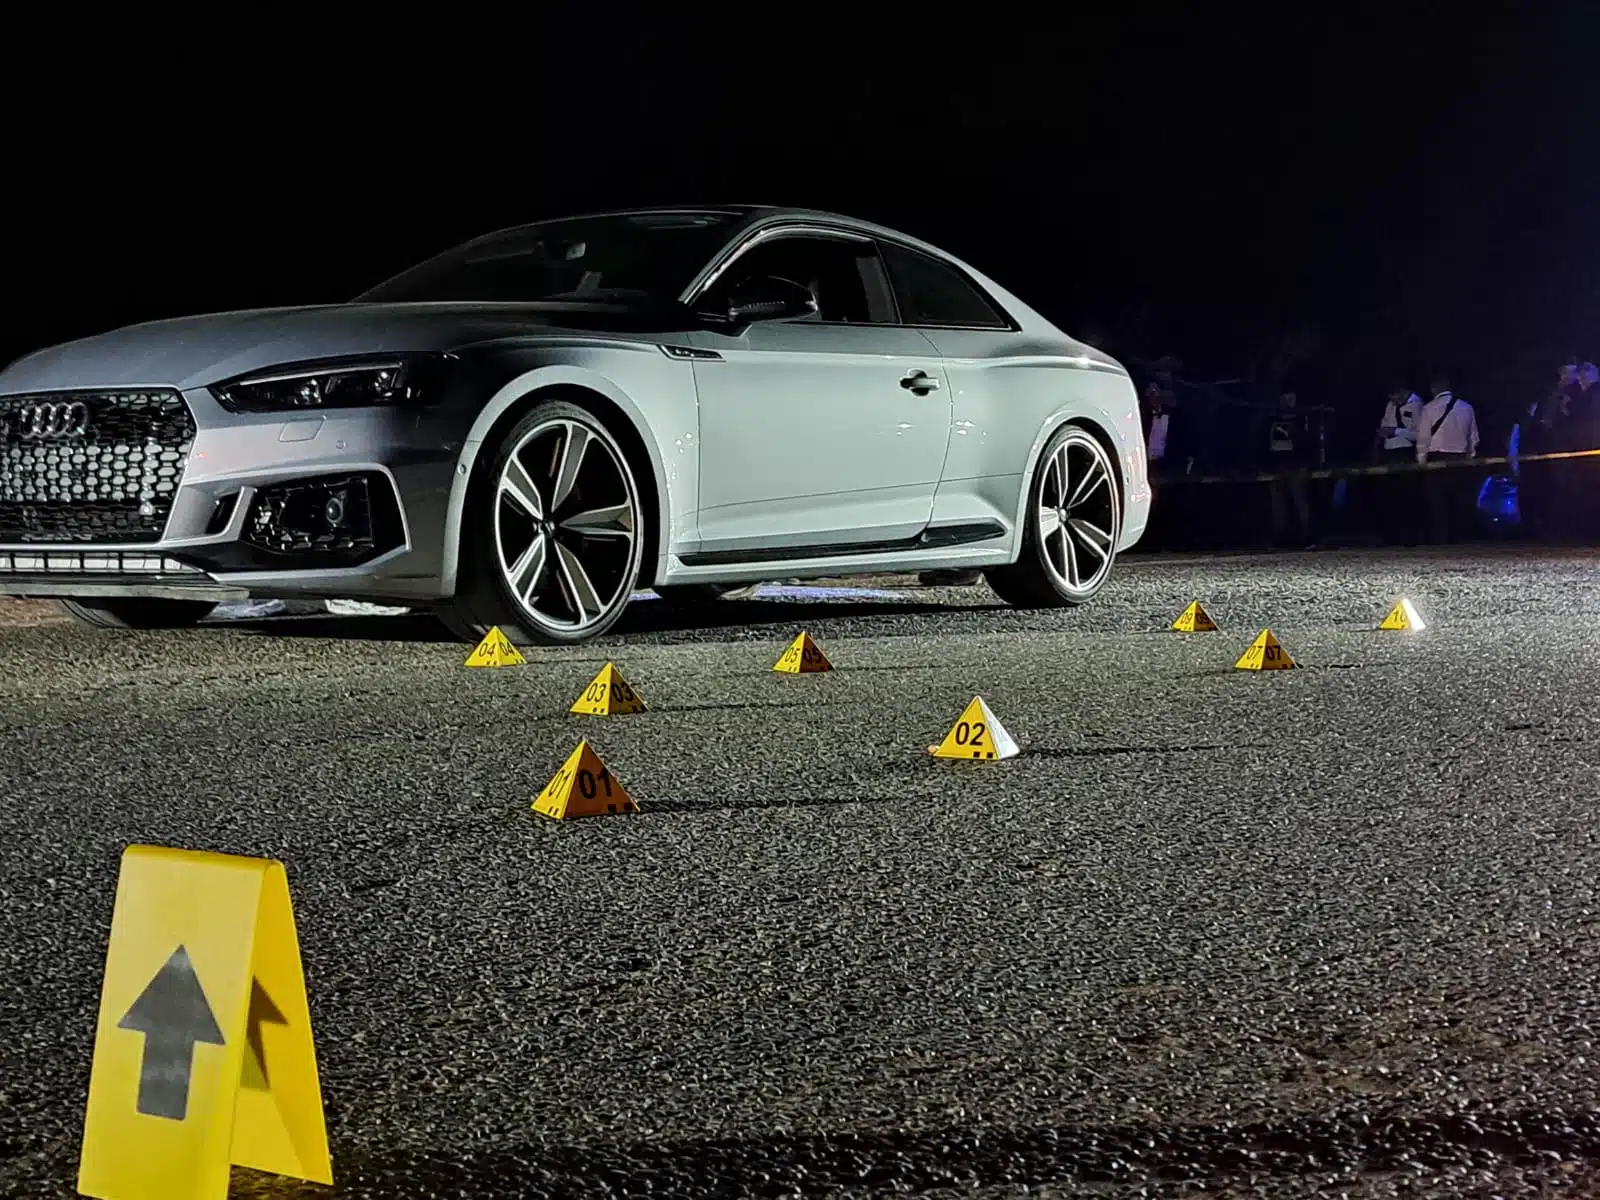 El cuerpo fue localizado junto a un automóvil Audi RS5 color gris.